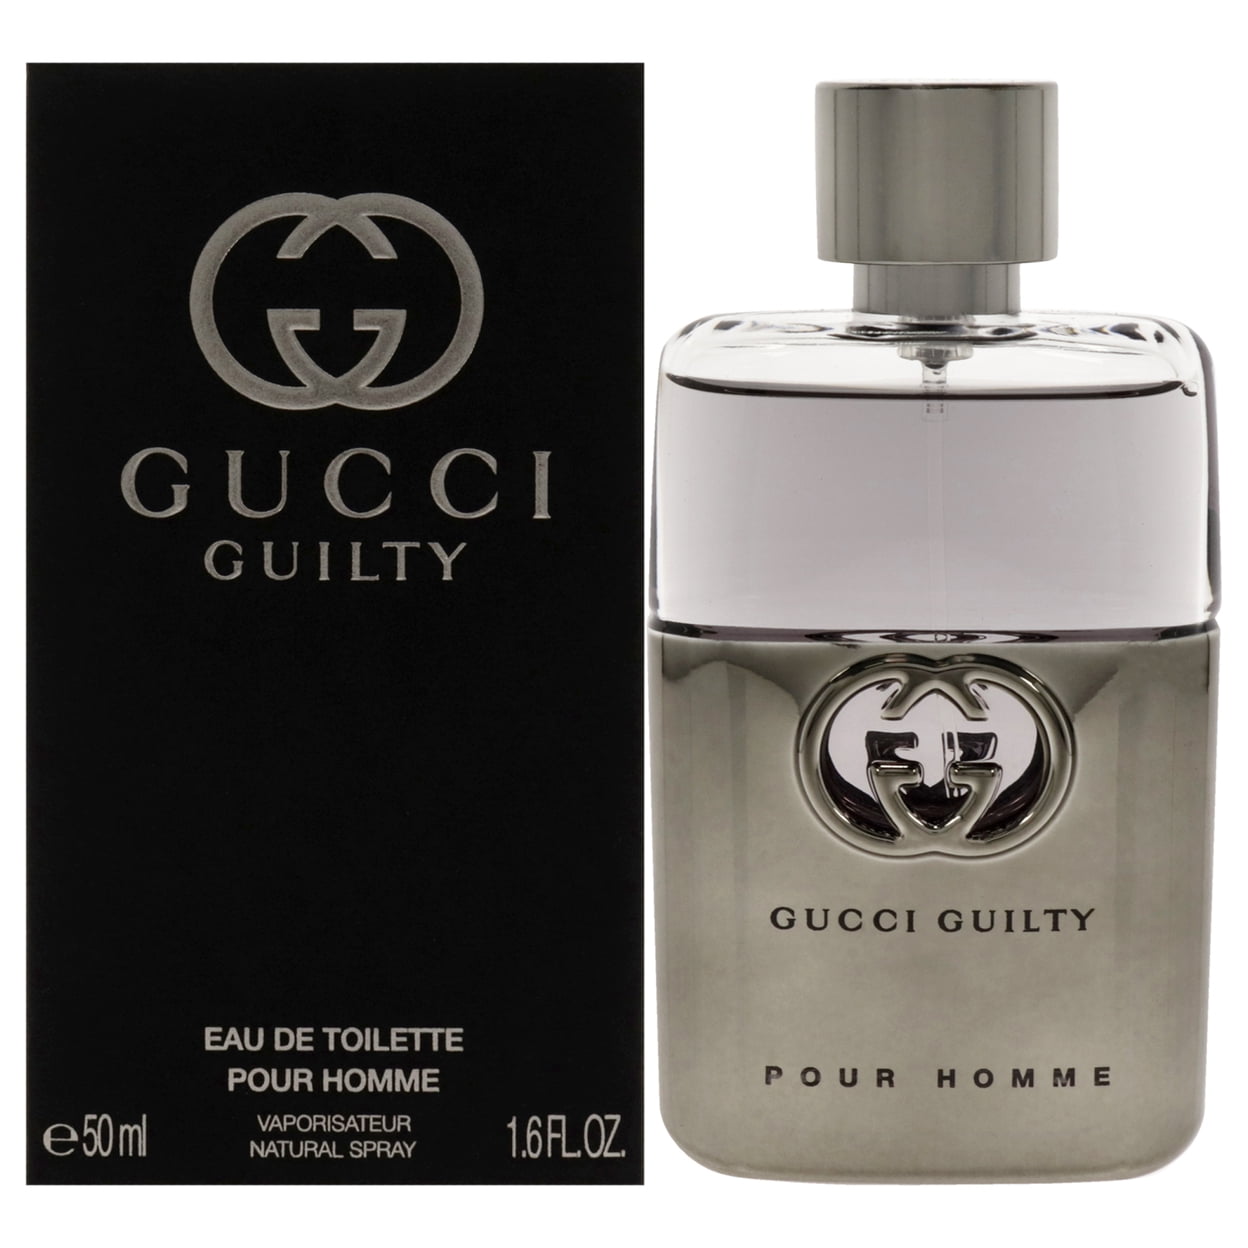 Guilty Pour Homme - Gucci